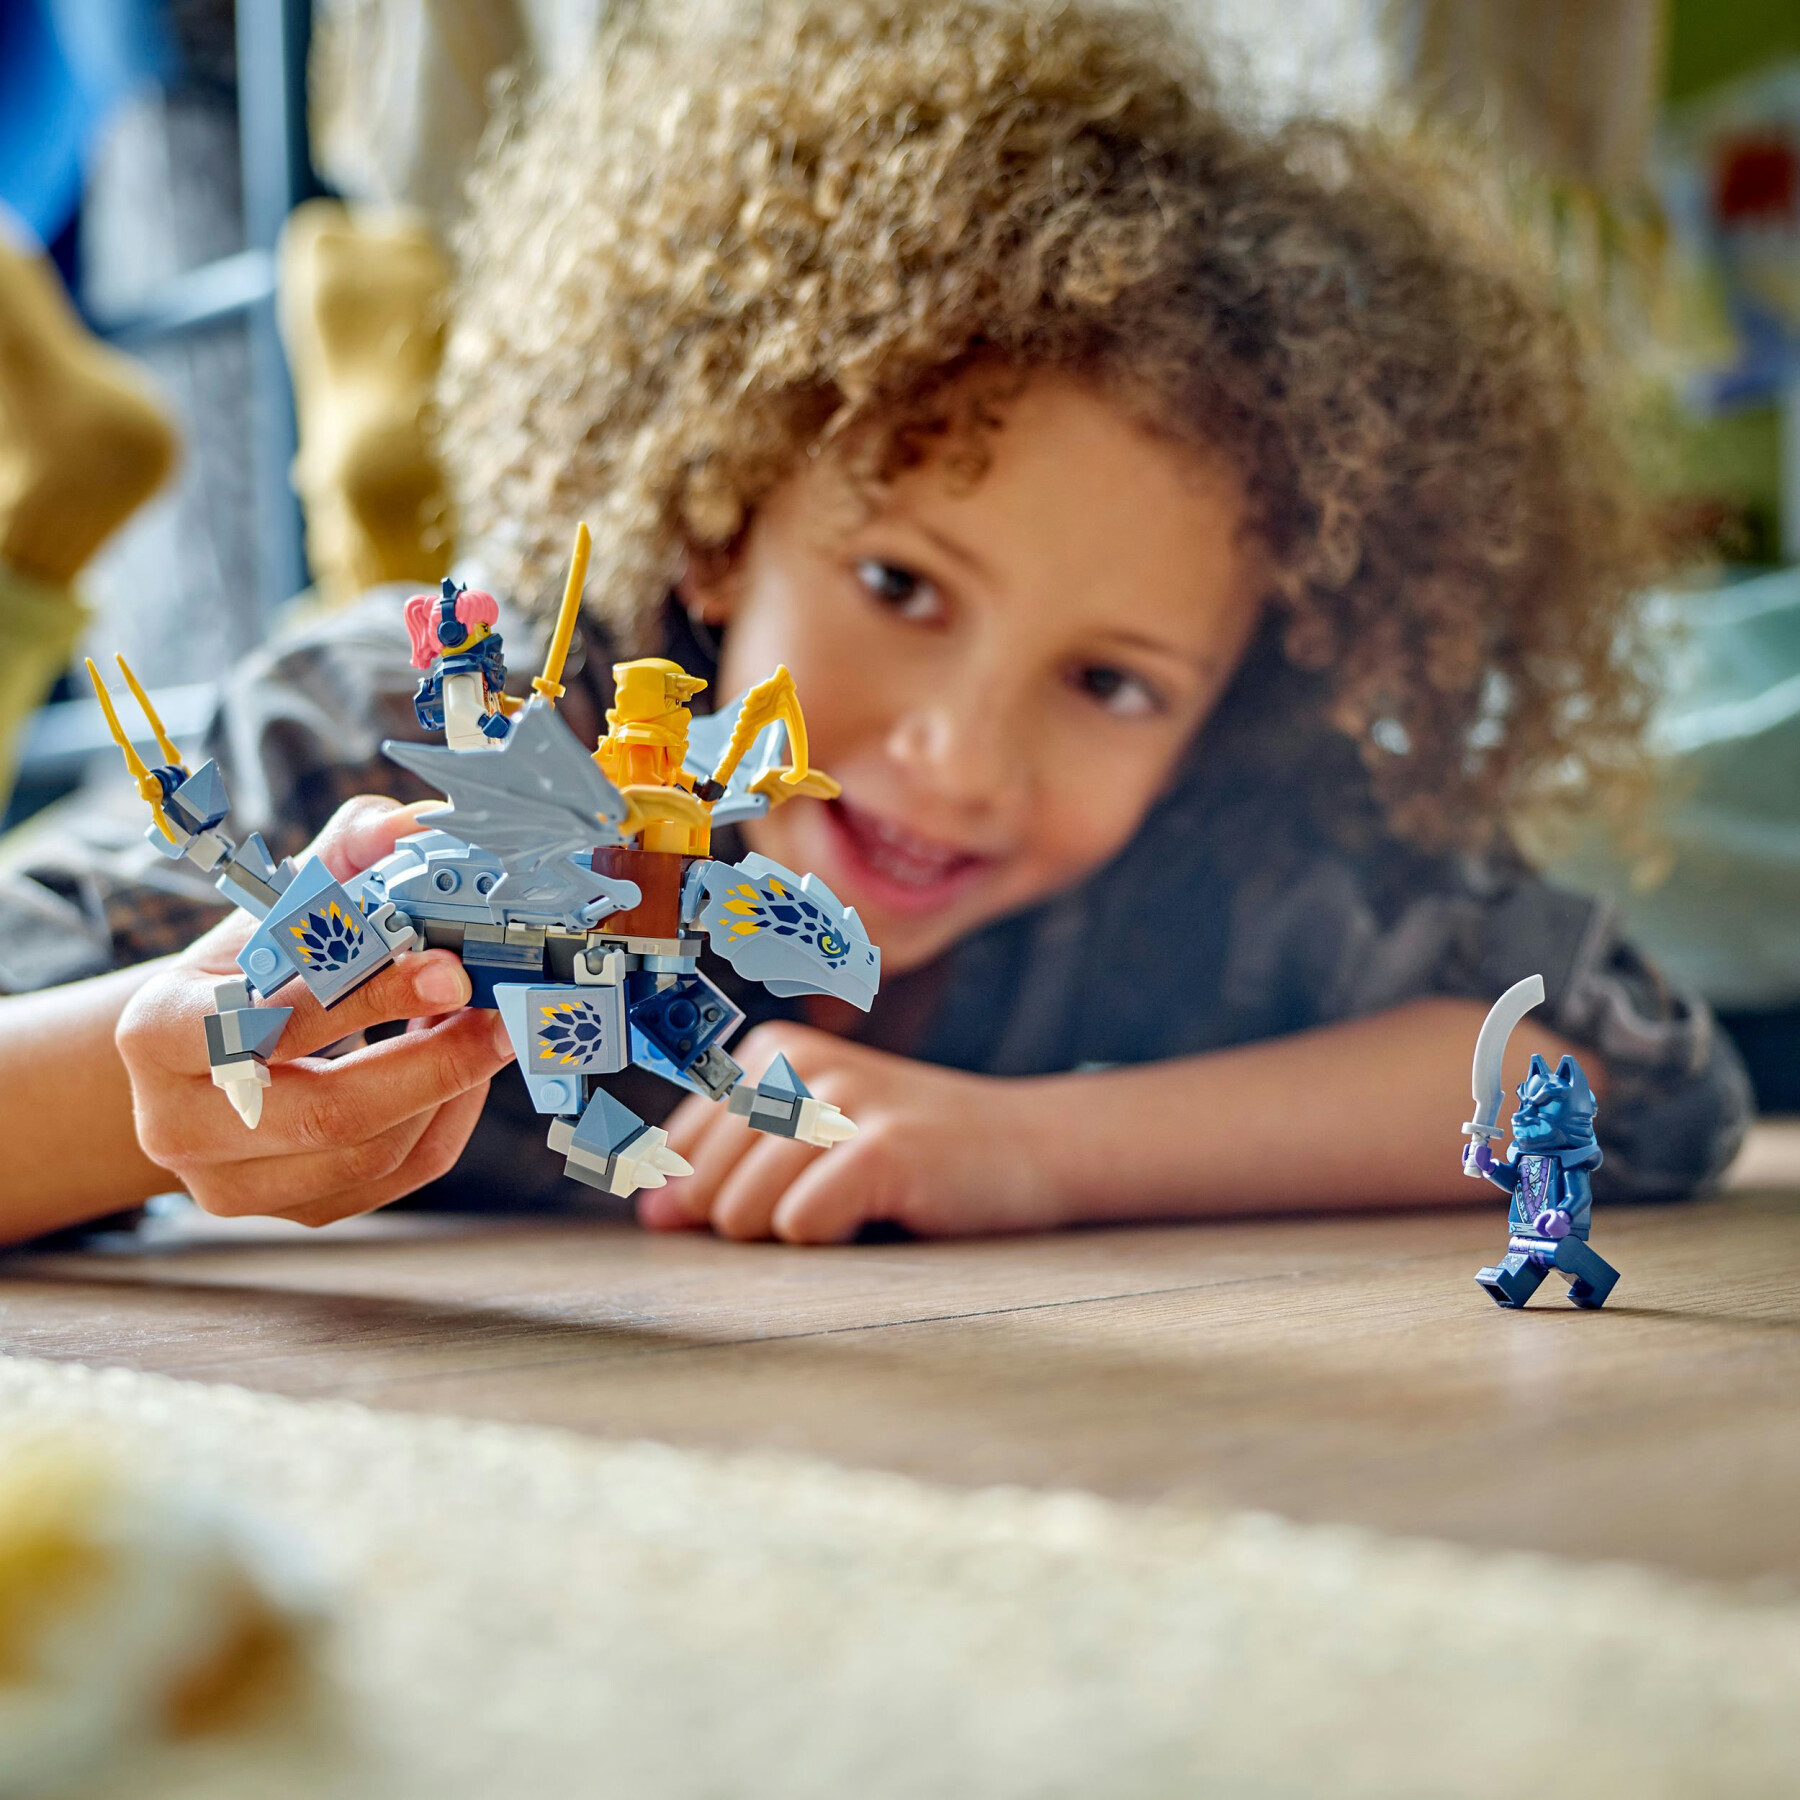 Lego ninjago 71810 draghetto riyu, modellino da costruire di drago giocattolo con 3 minifigure, giochi per bambini di 6+ anni - LEGO NINJAGO